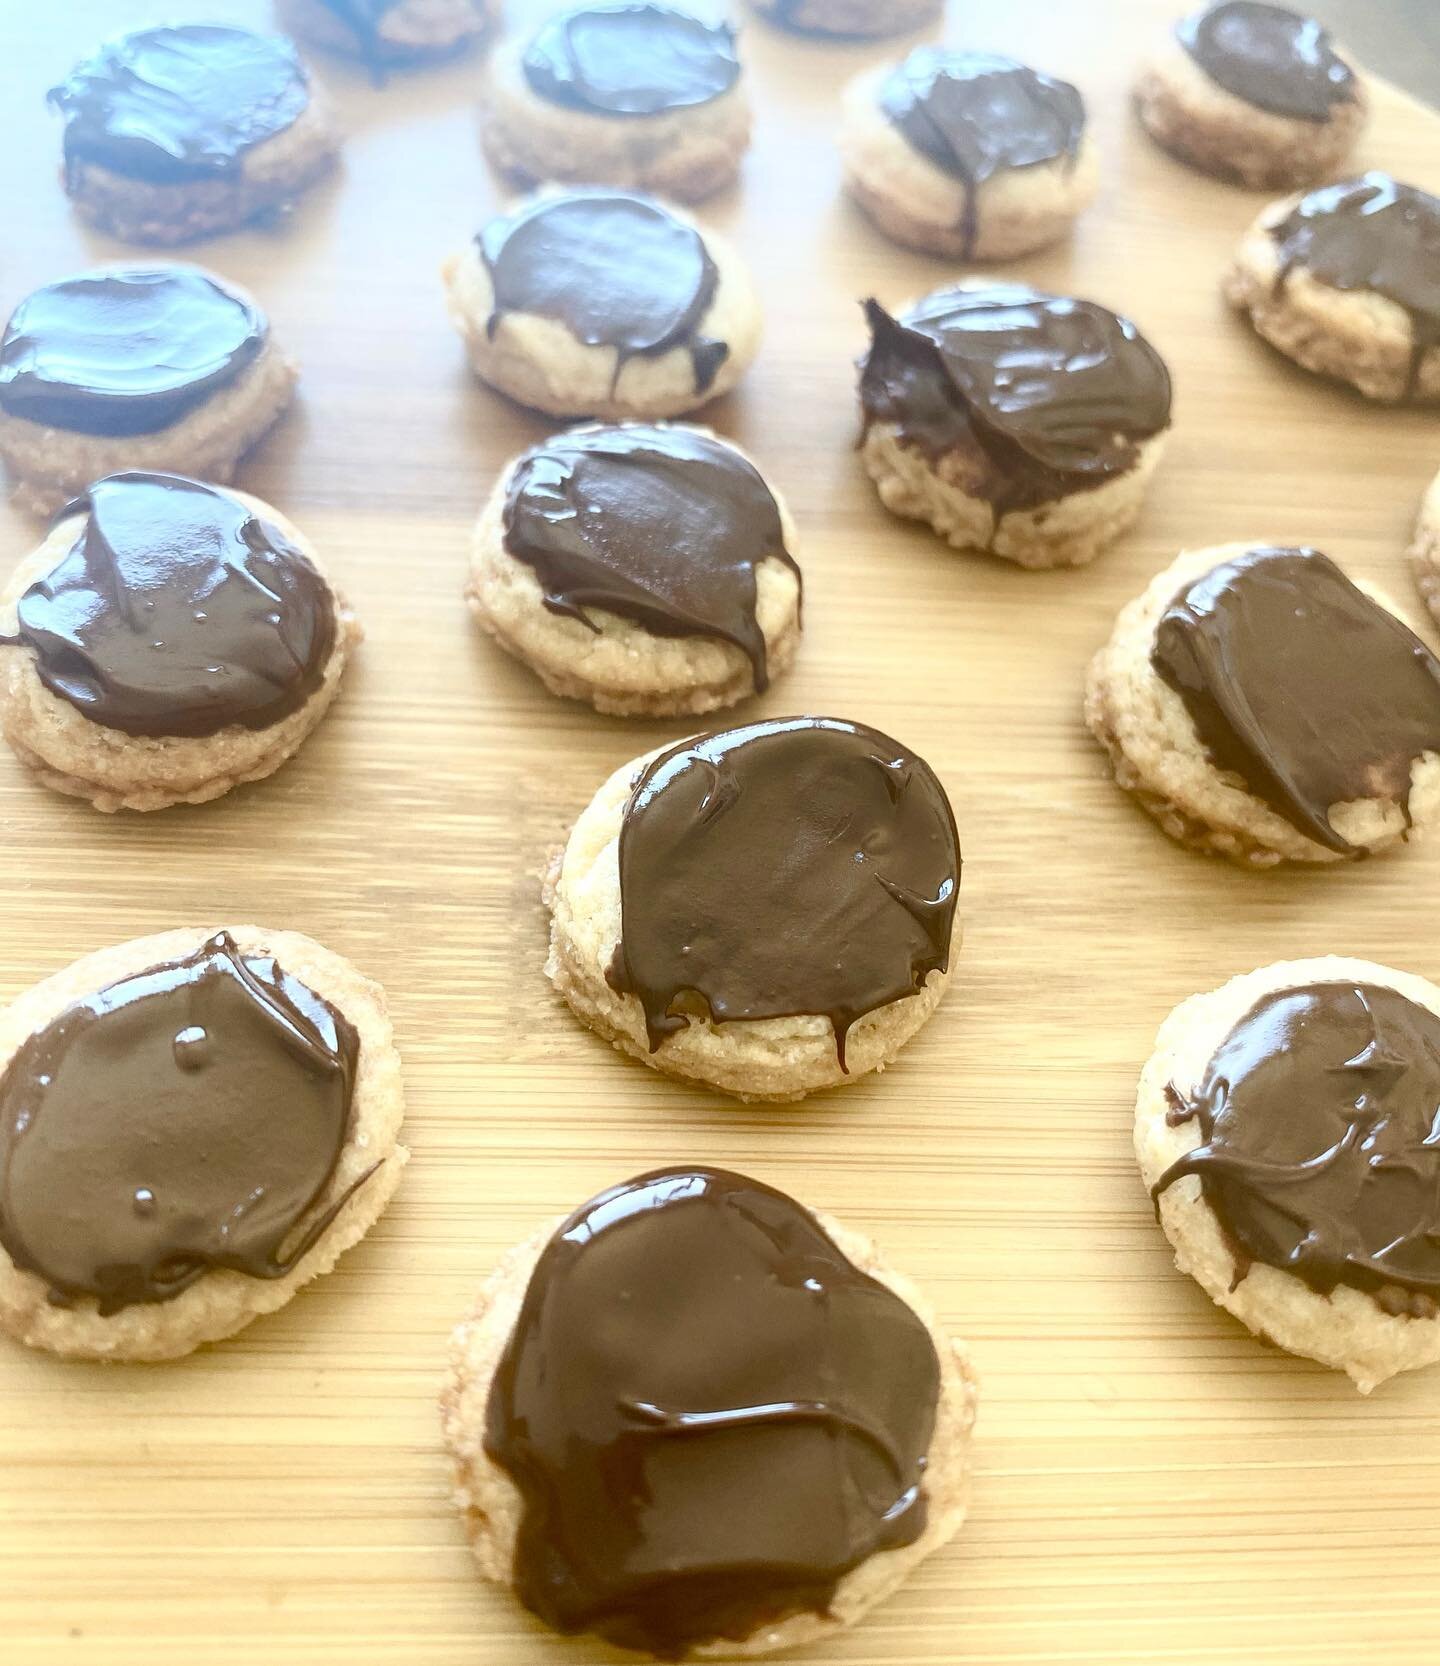 Para cuando necesitas acordarte de las galletas que vienen en las cajas de metal que todas las abuelas tienen en sus casas. &iexcl;Galletas de mantequilla con chocolate negro! Receta en el link en bio ⬆️ #buttercookies #buttercookies🍪 #galletas #pos